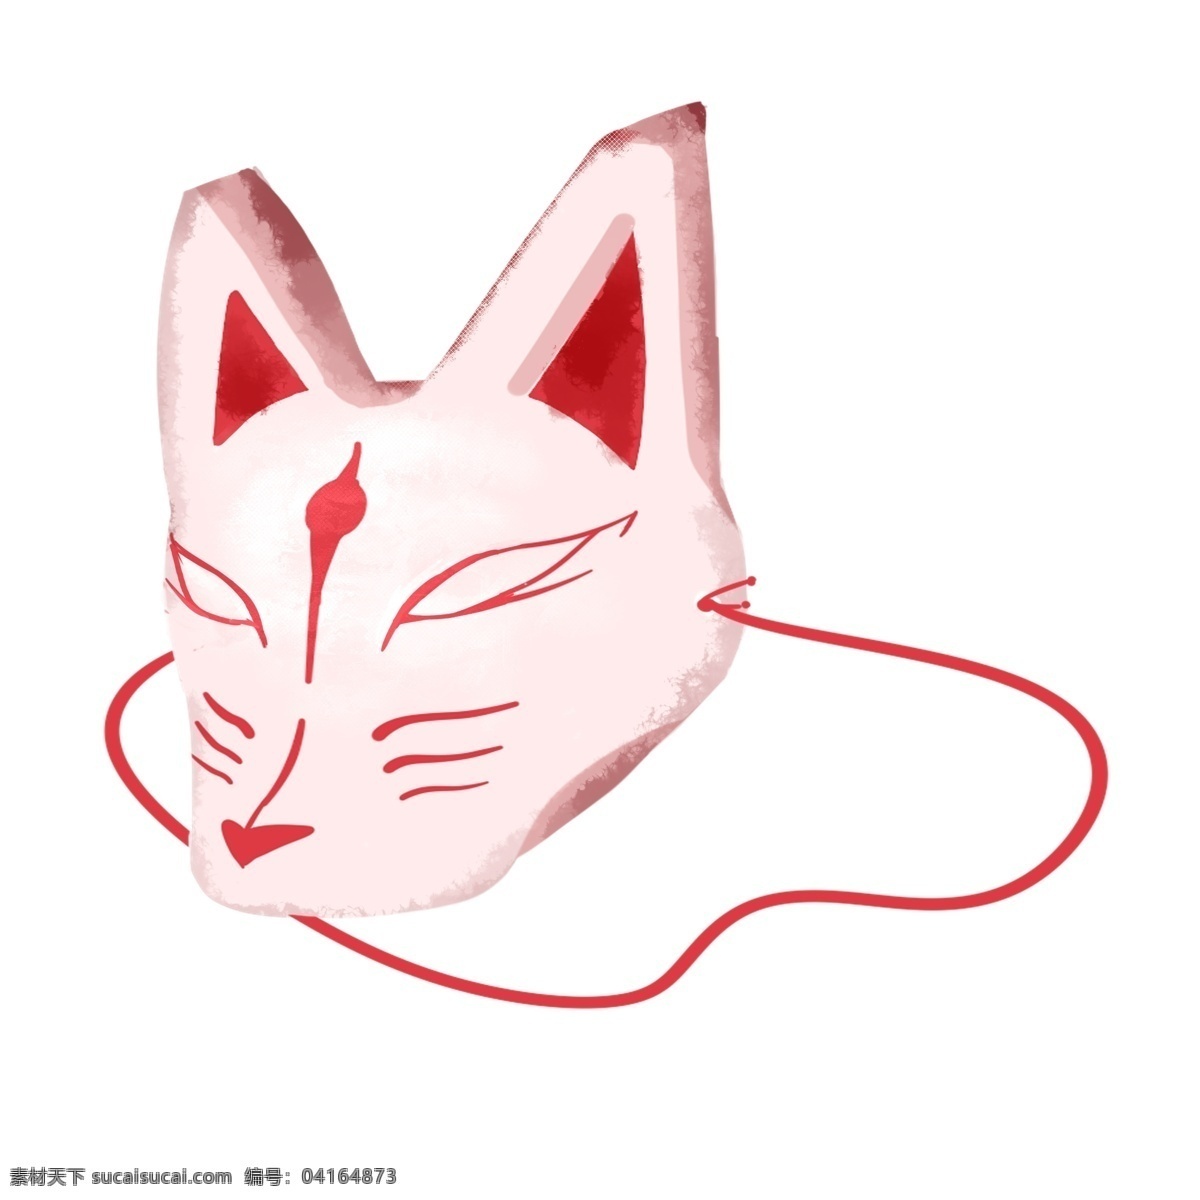 日 系 文化 狐狸 面具 伪装 猫脸 白猫 日本白猫面具 艺术 日系文化 亚洲文化 装饰 狐狸面具插画